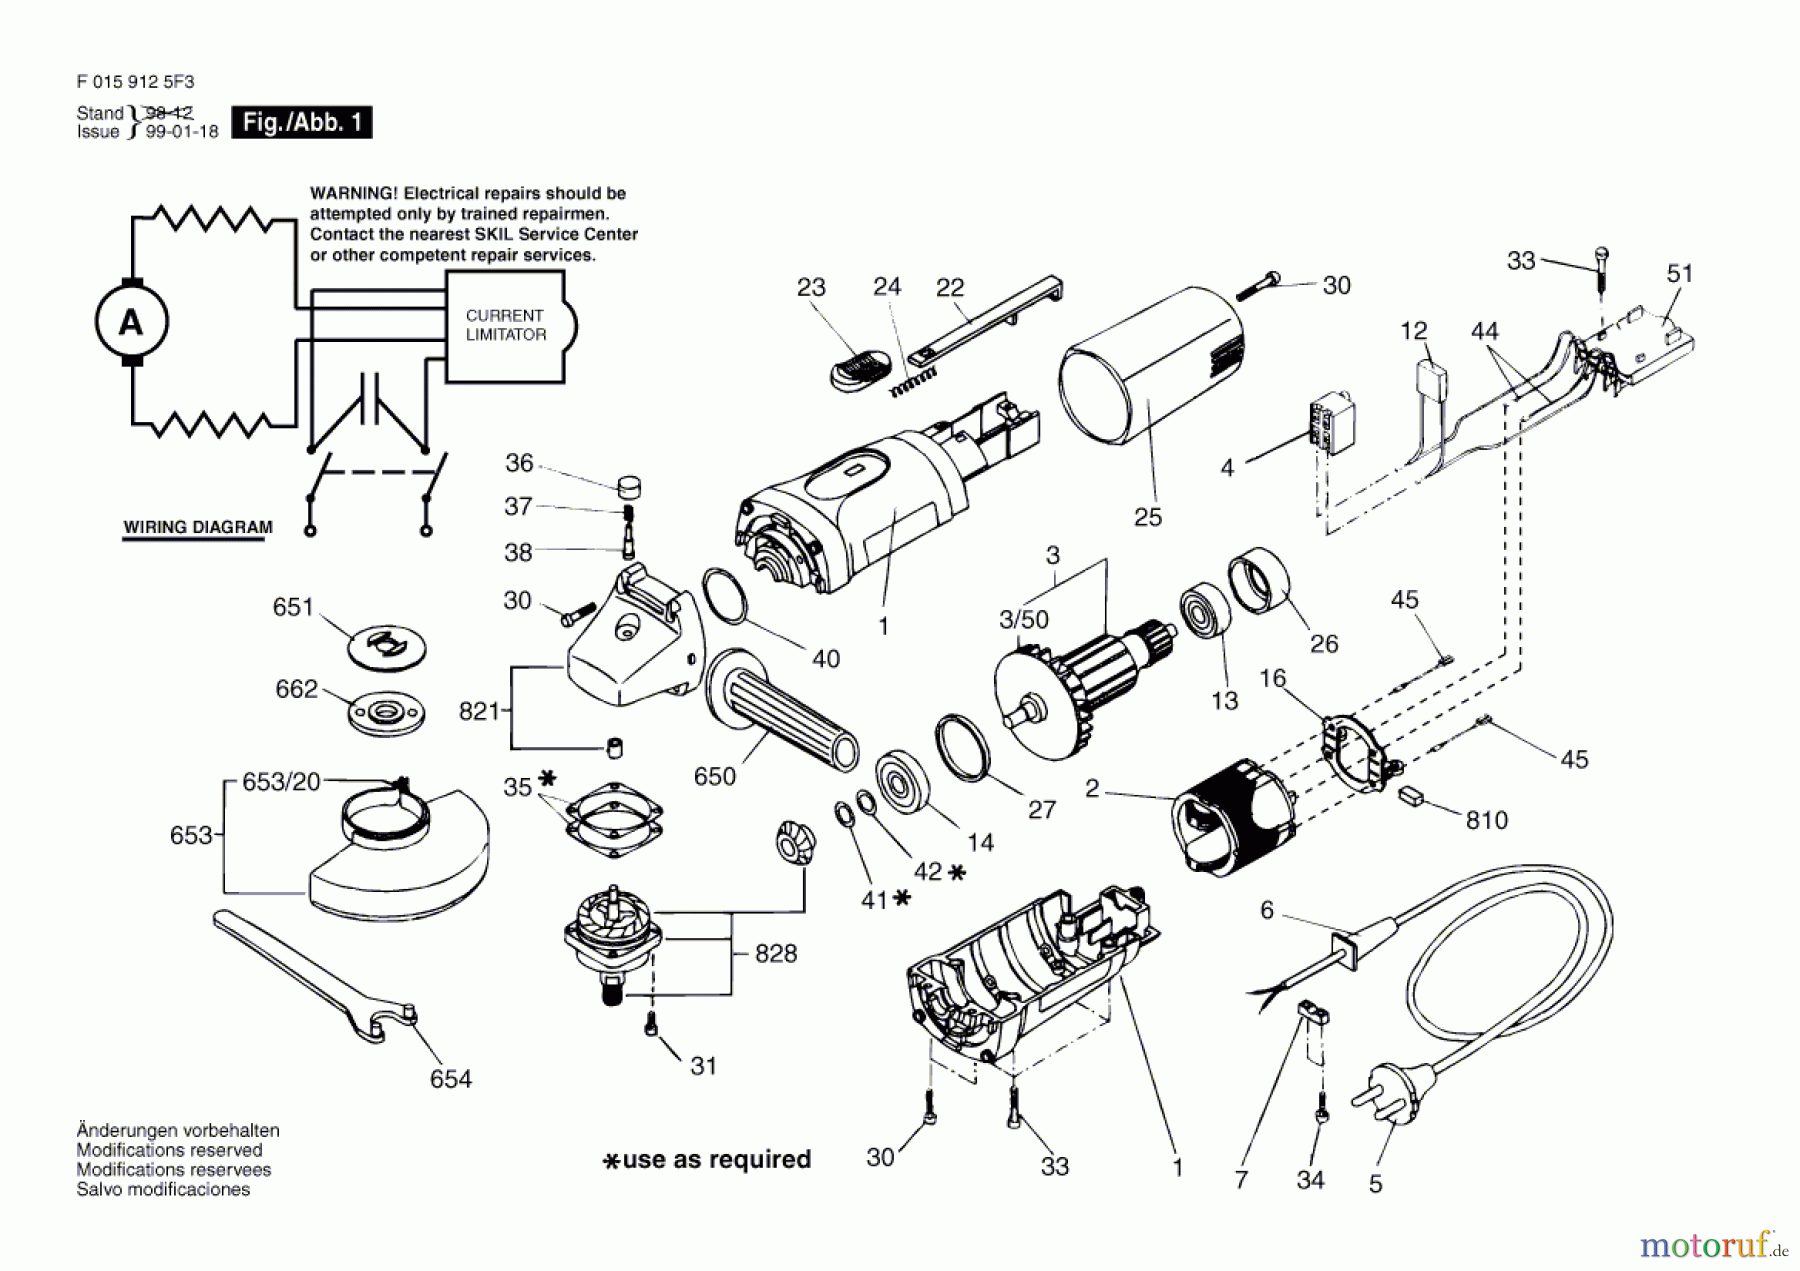  Bosch Werkzeug Winkelschleifer 9125 Seite 1